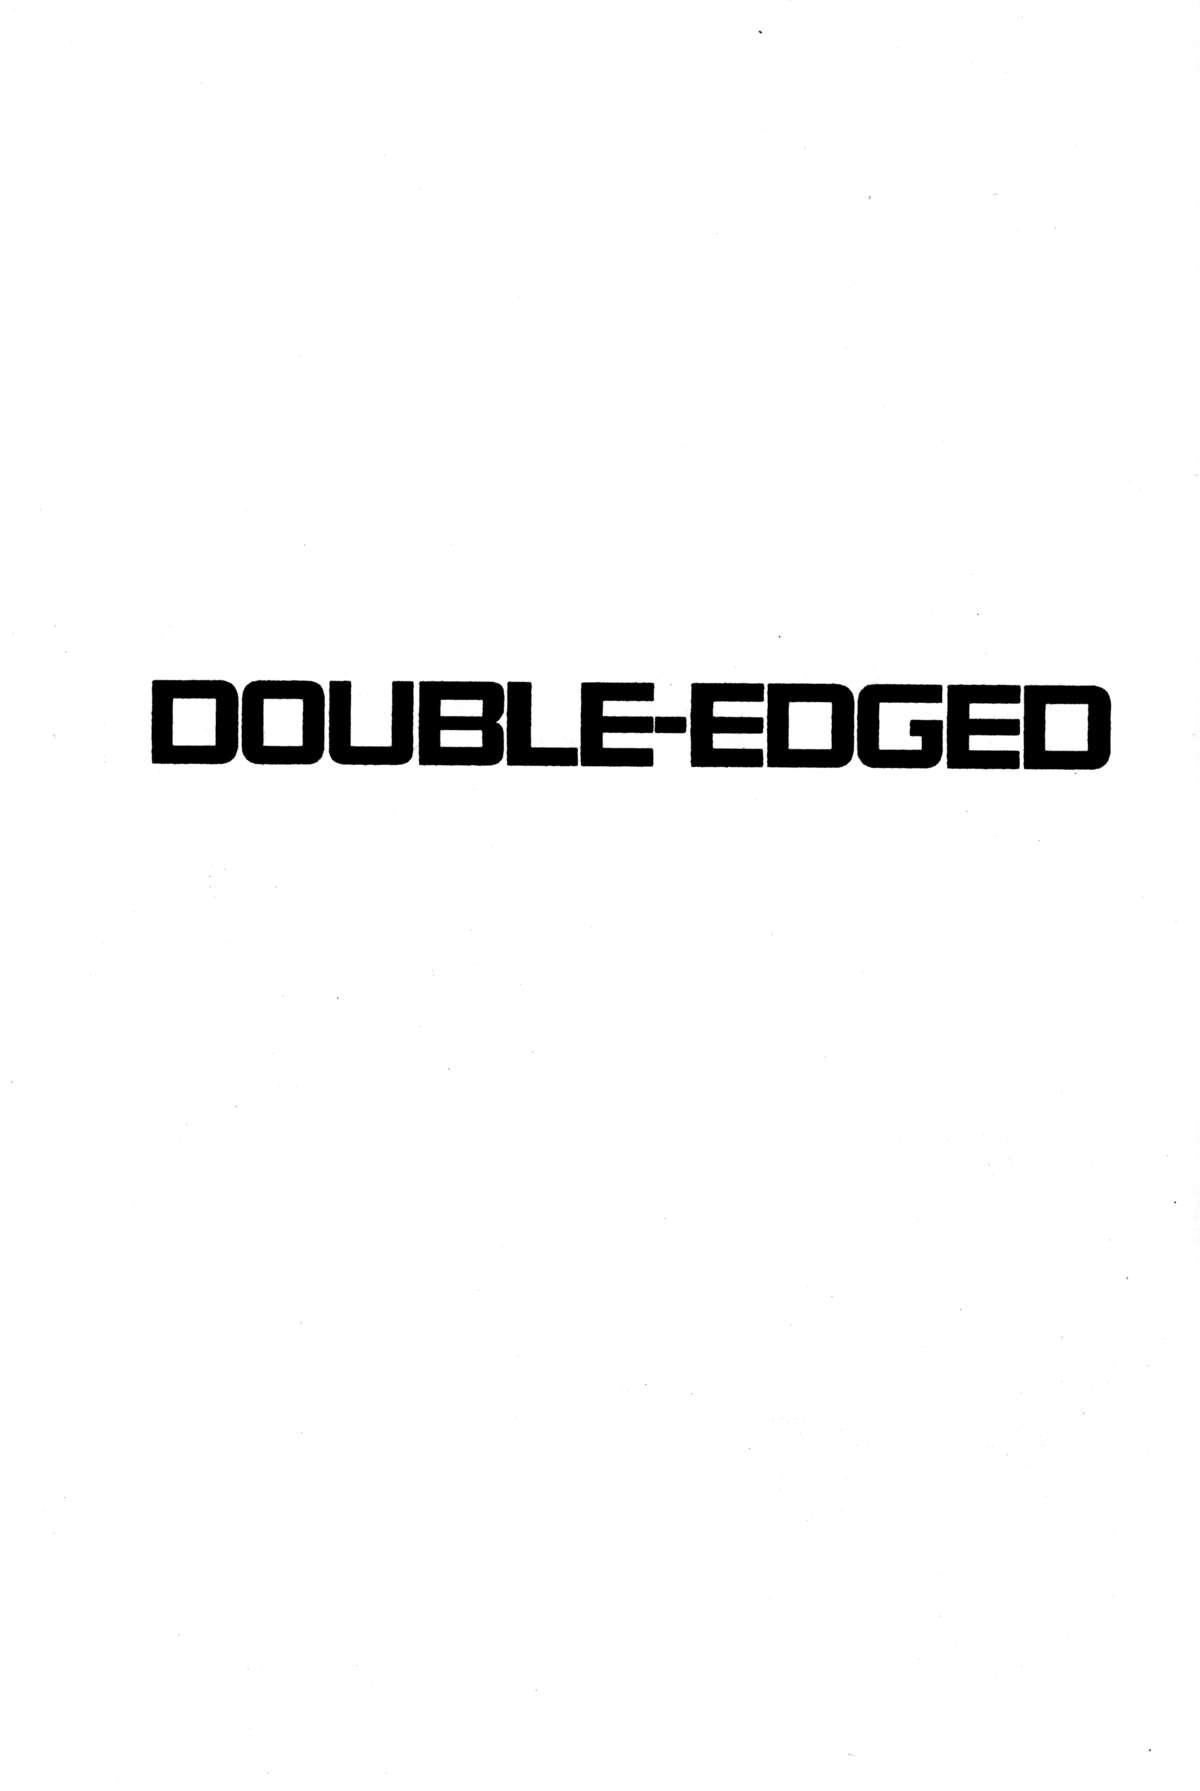 DOUBLE-EDGED 1